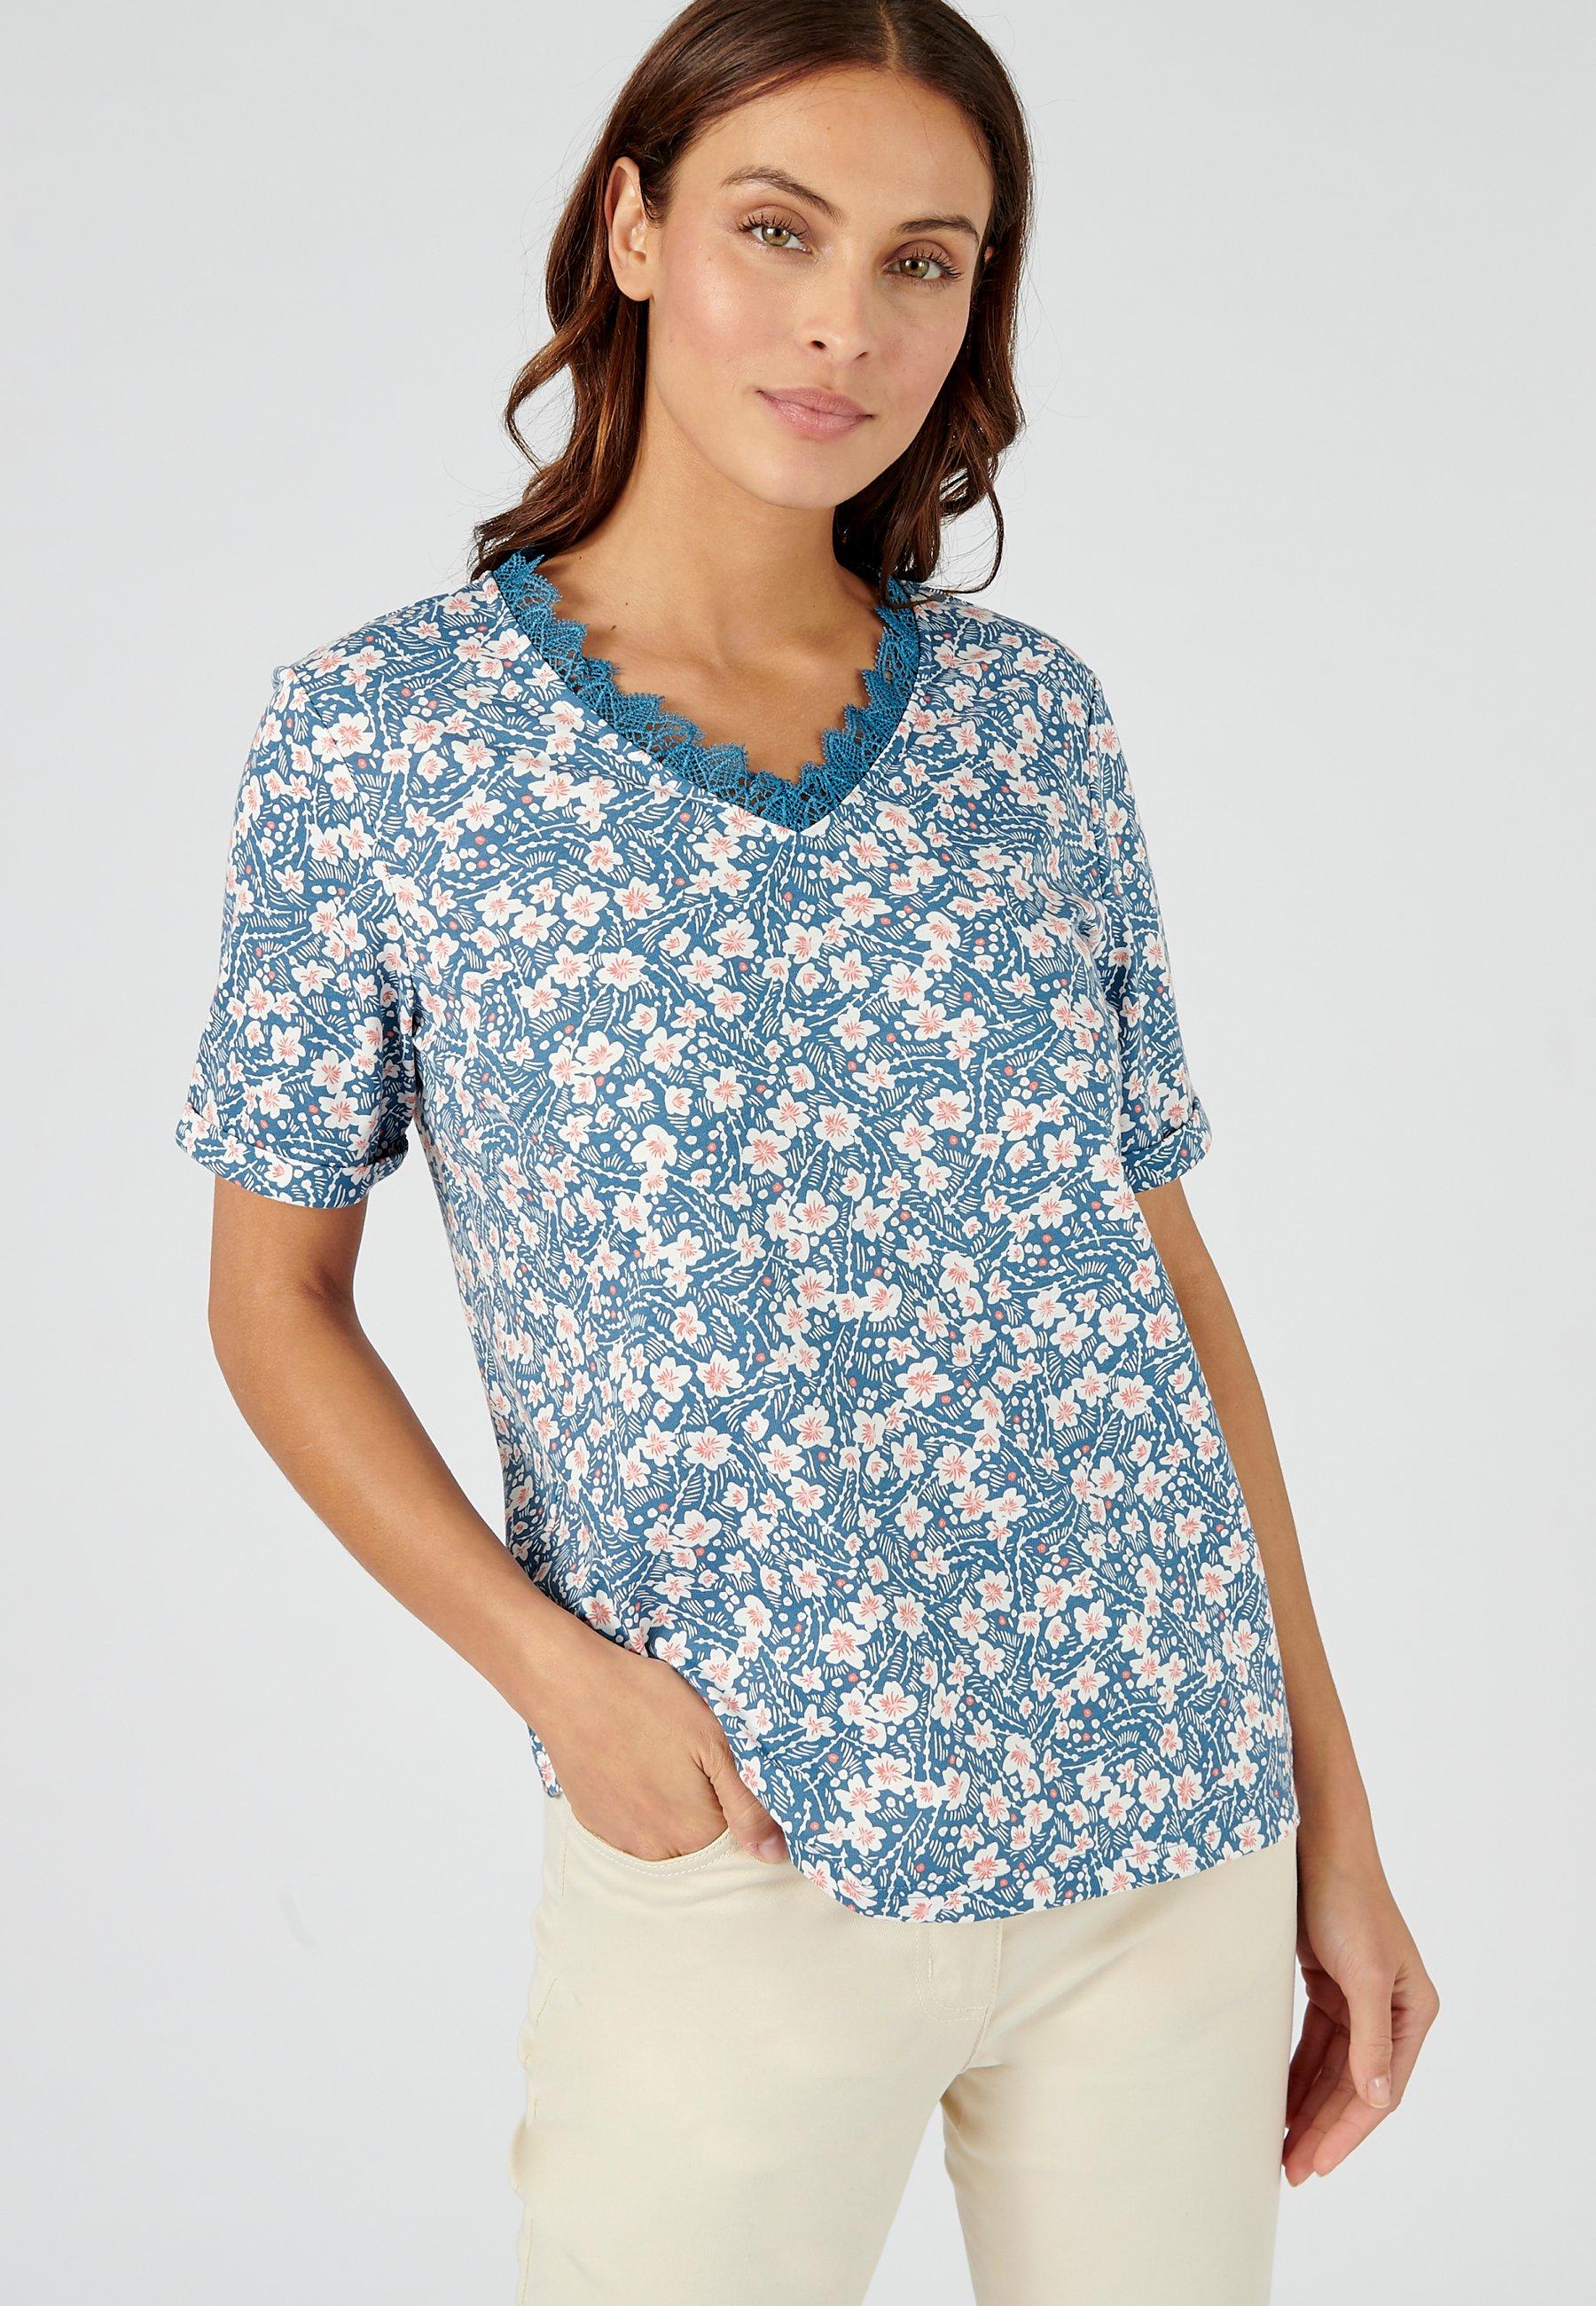 T-shirt Mit Blumenprint. Damen Blau 42/44 von Damart